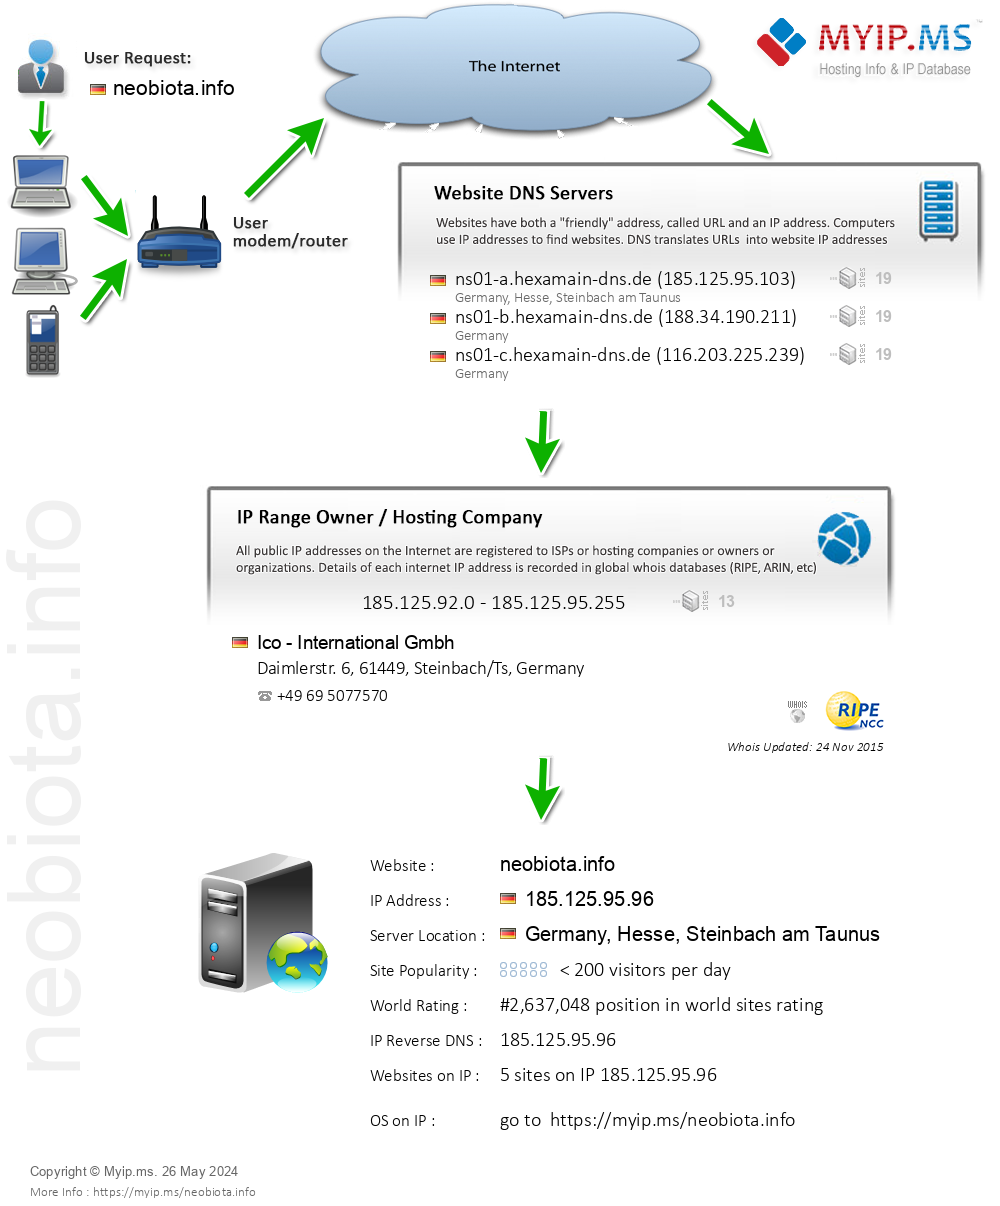 Neobiota.info - Website Hosting Visual IP Diagram